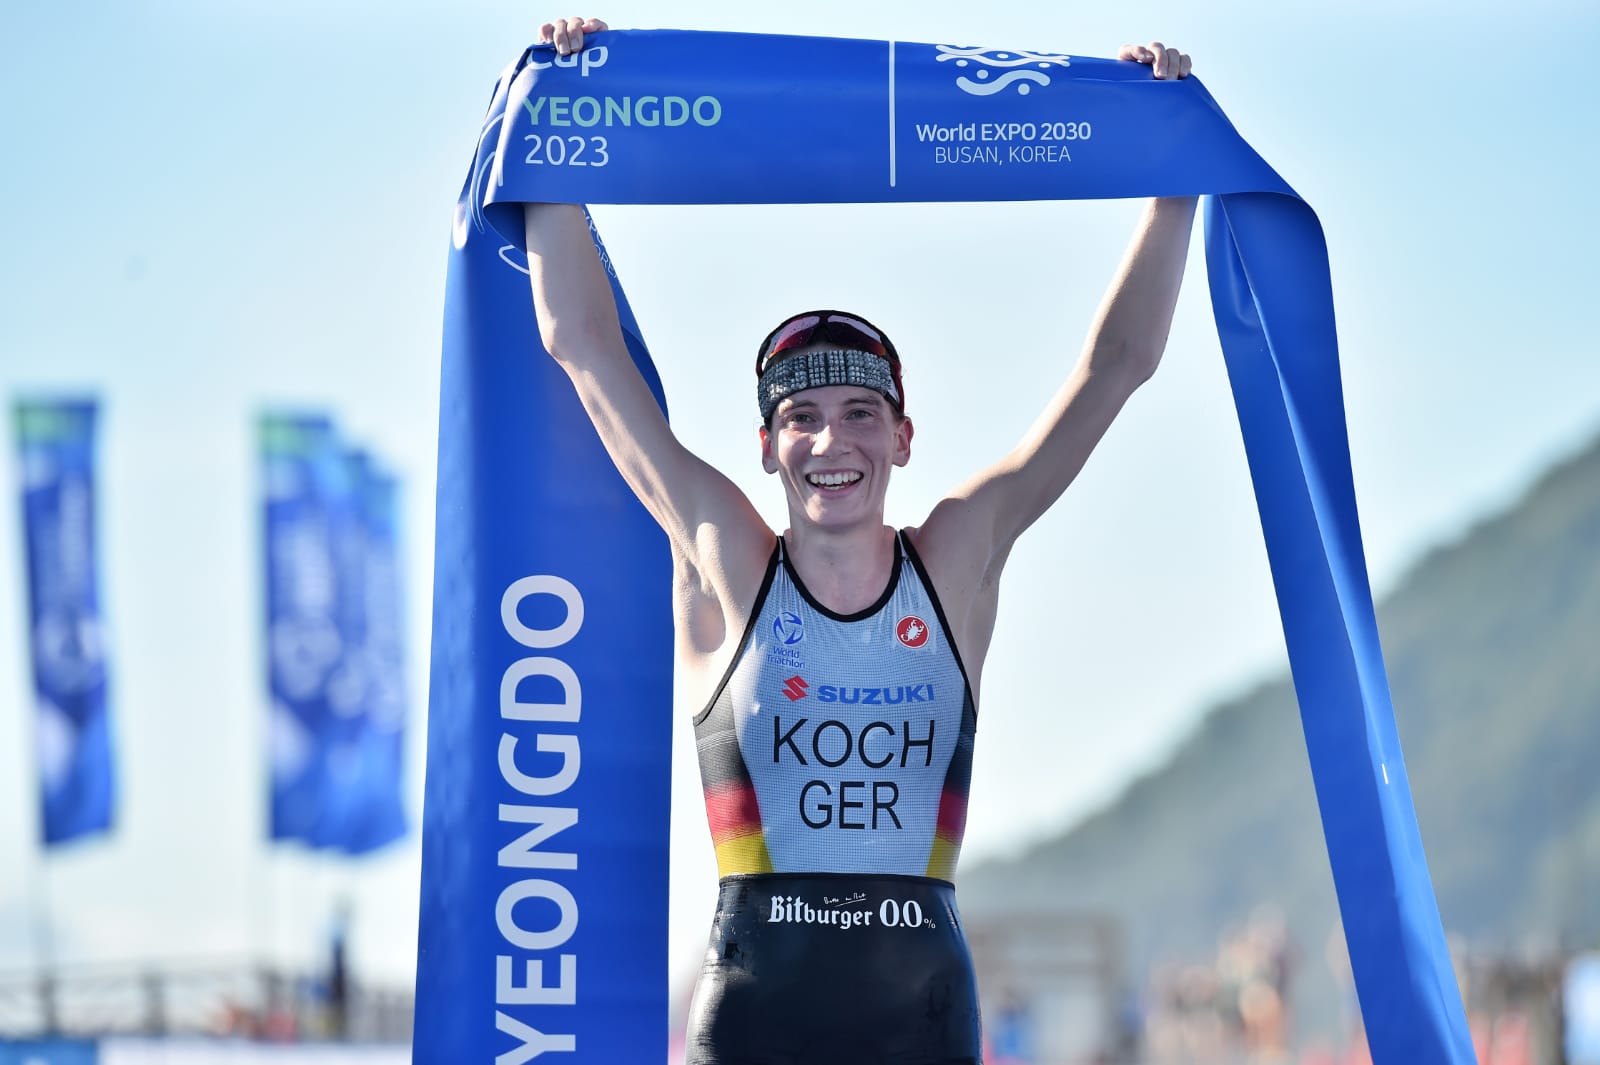 Annika Koch strikes World Cup gold in Yeongdo • World Triathlon